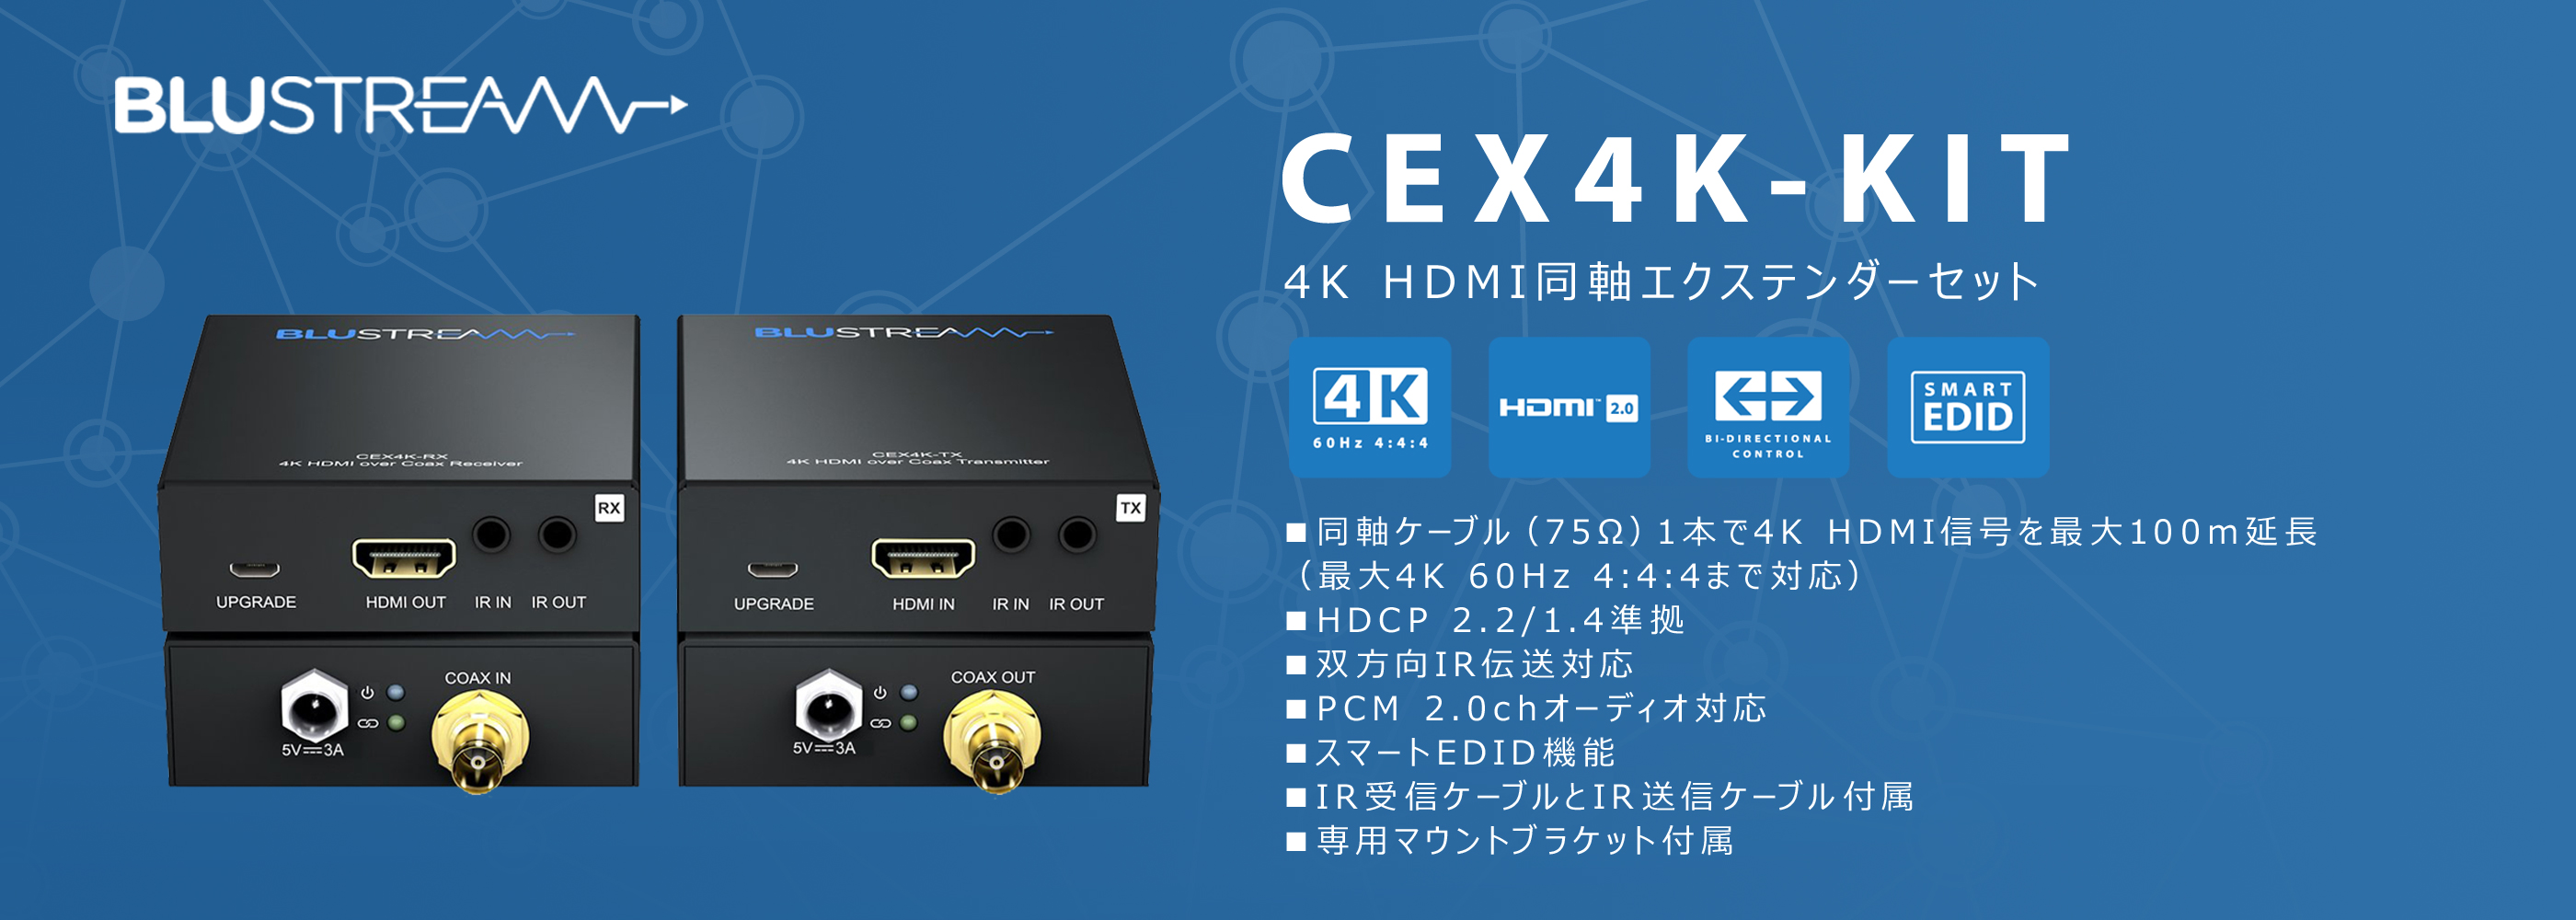 4K 60Hz 4:4:4のHDMI信号を同軸ケーブル